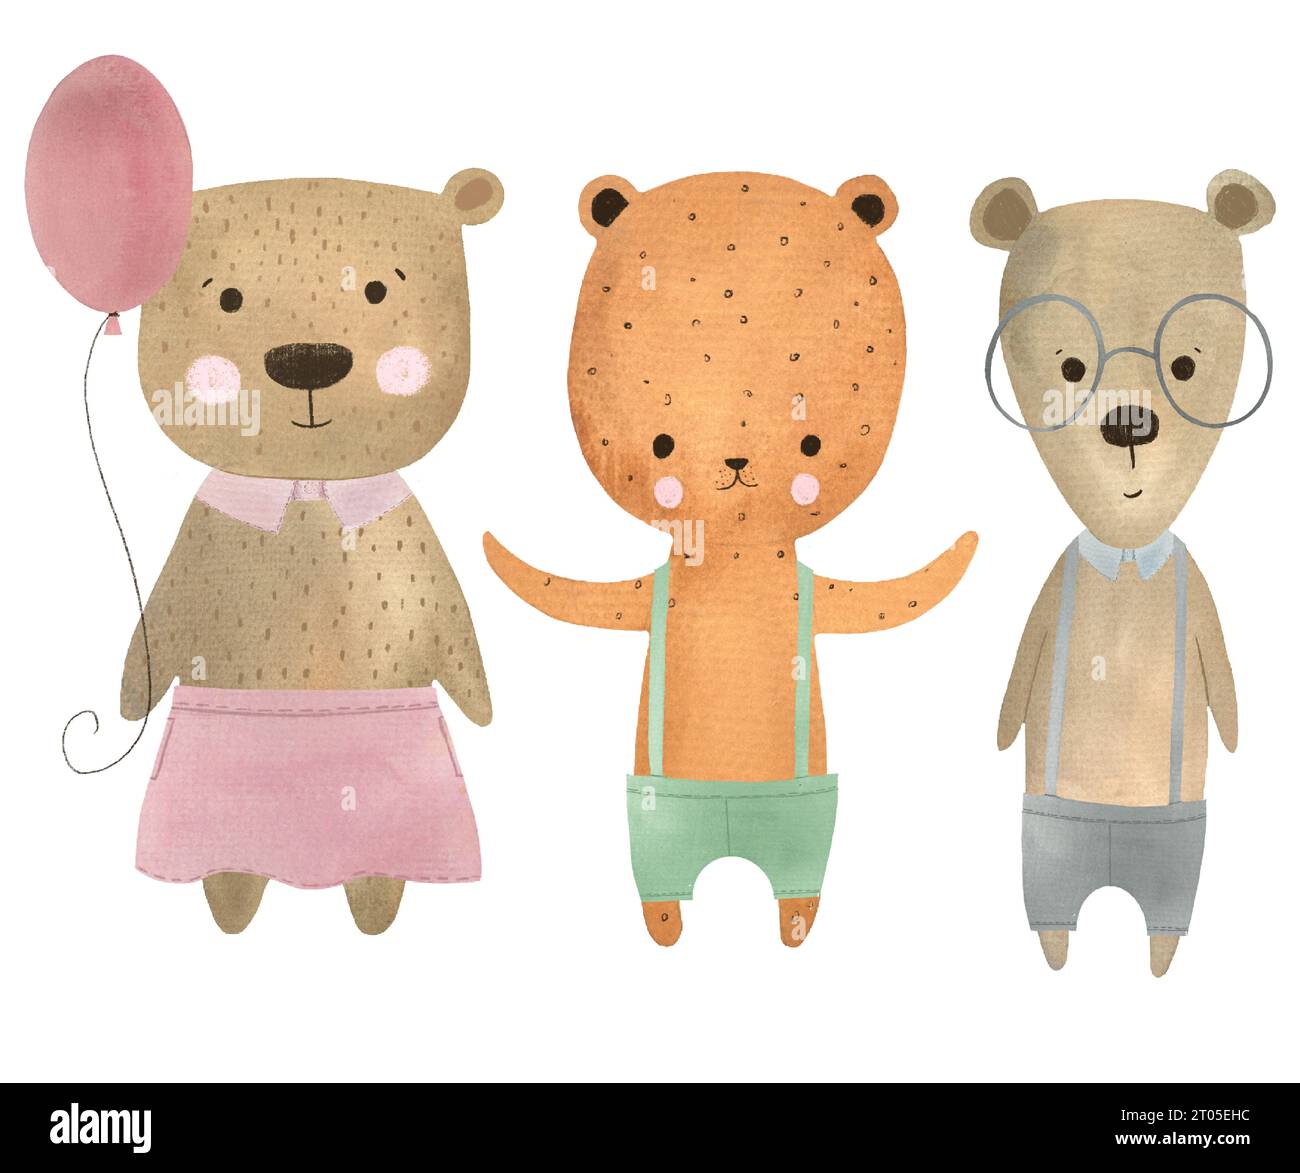 simpatici orsi minimalisti, semplice illustrazione ad acquerello disegnata a mano, simpatici orsi per bambini, immagini illustrative di prodotti per bambini, personaggio disegnato a mano isolato Foto Stock